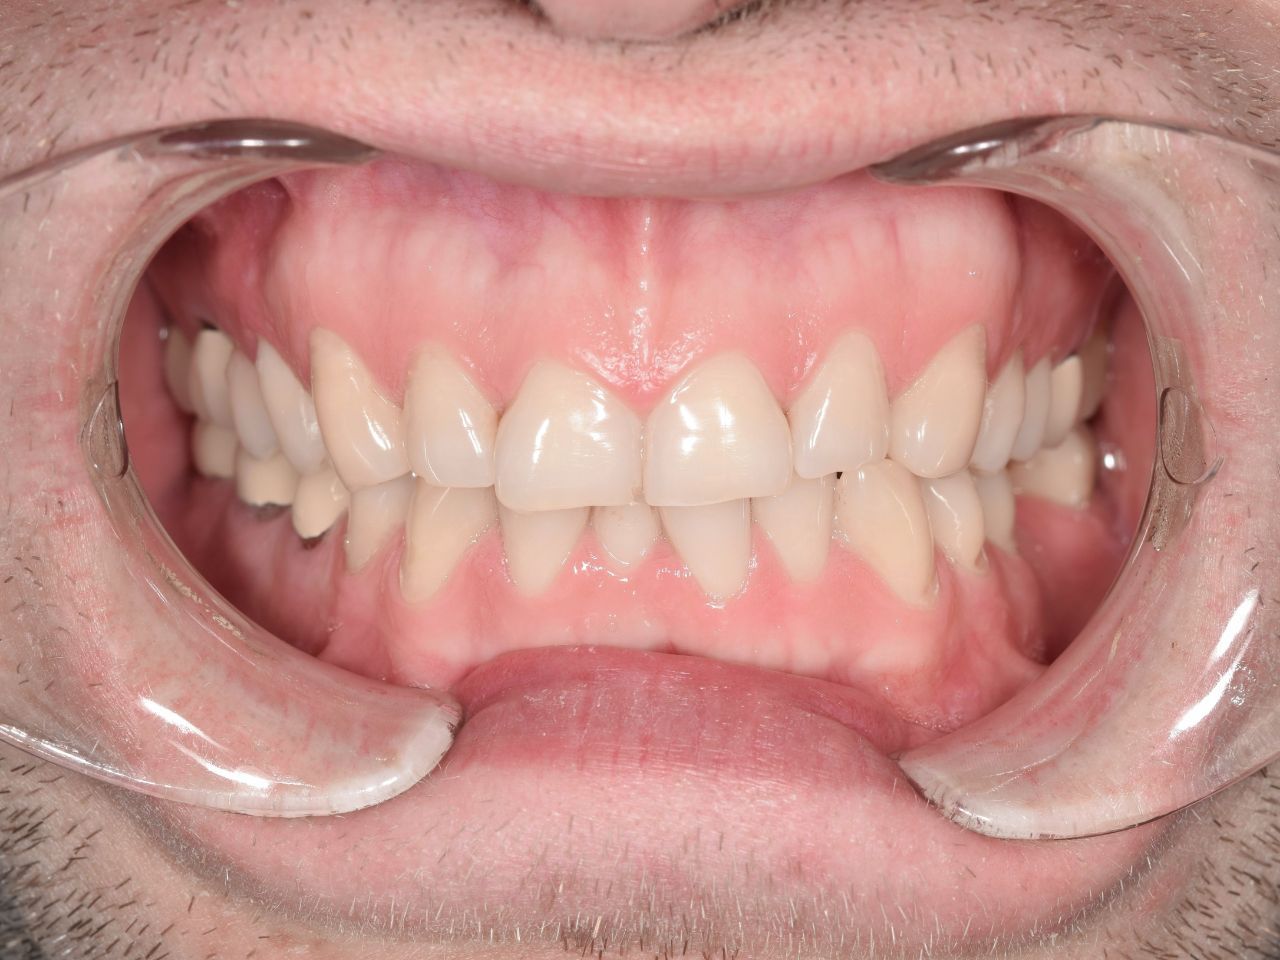 Эстетические композитные реставрации зубов верхней и нижней челюсти после ортодонтического лечения